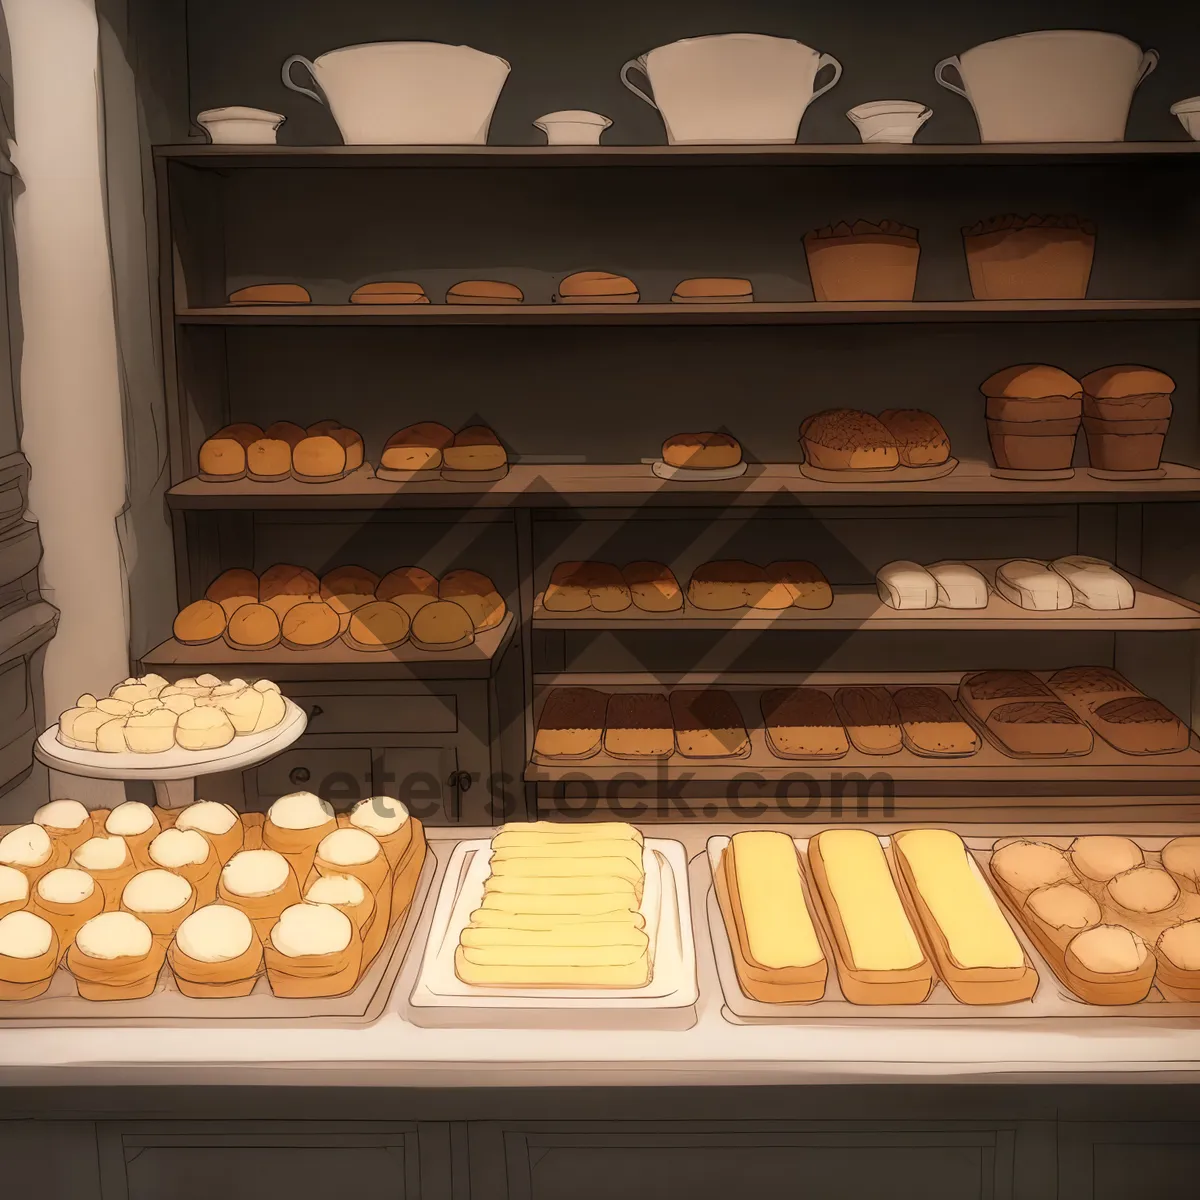 Picture of Bakery Shop Food Establishment Kitchen